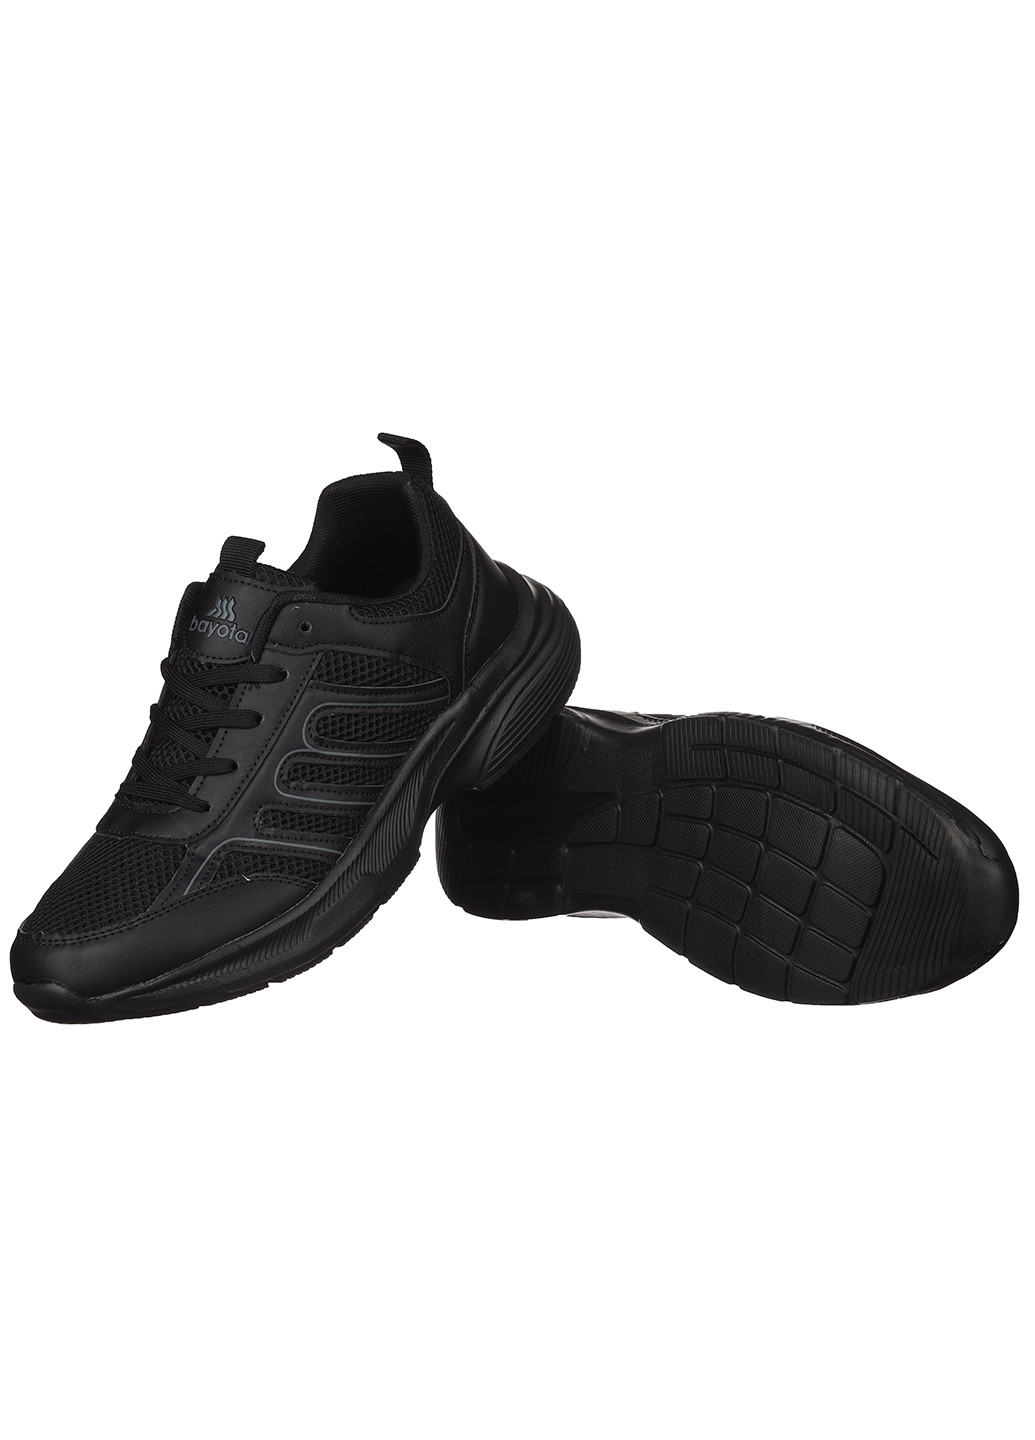 Черные демисезонные кроссовки из текстиля для мужчин Bayota